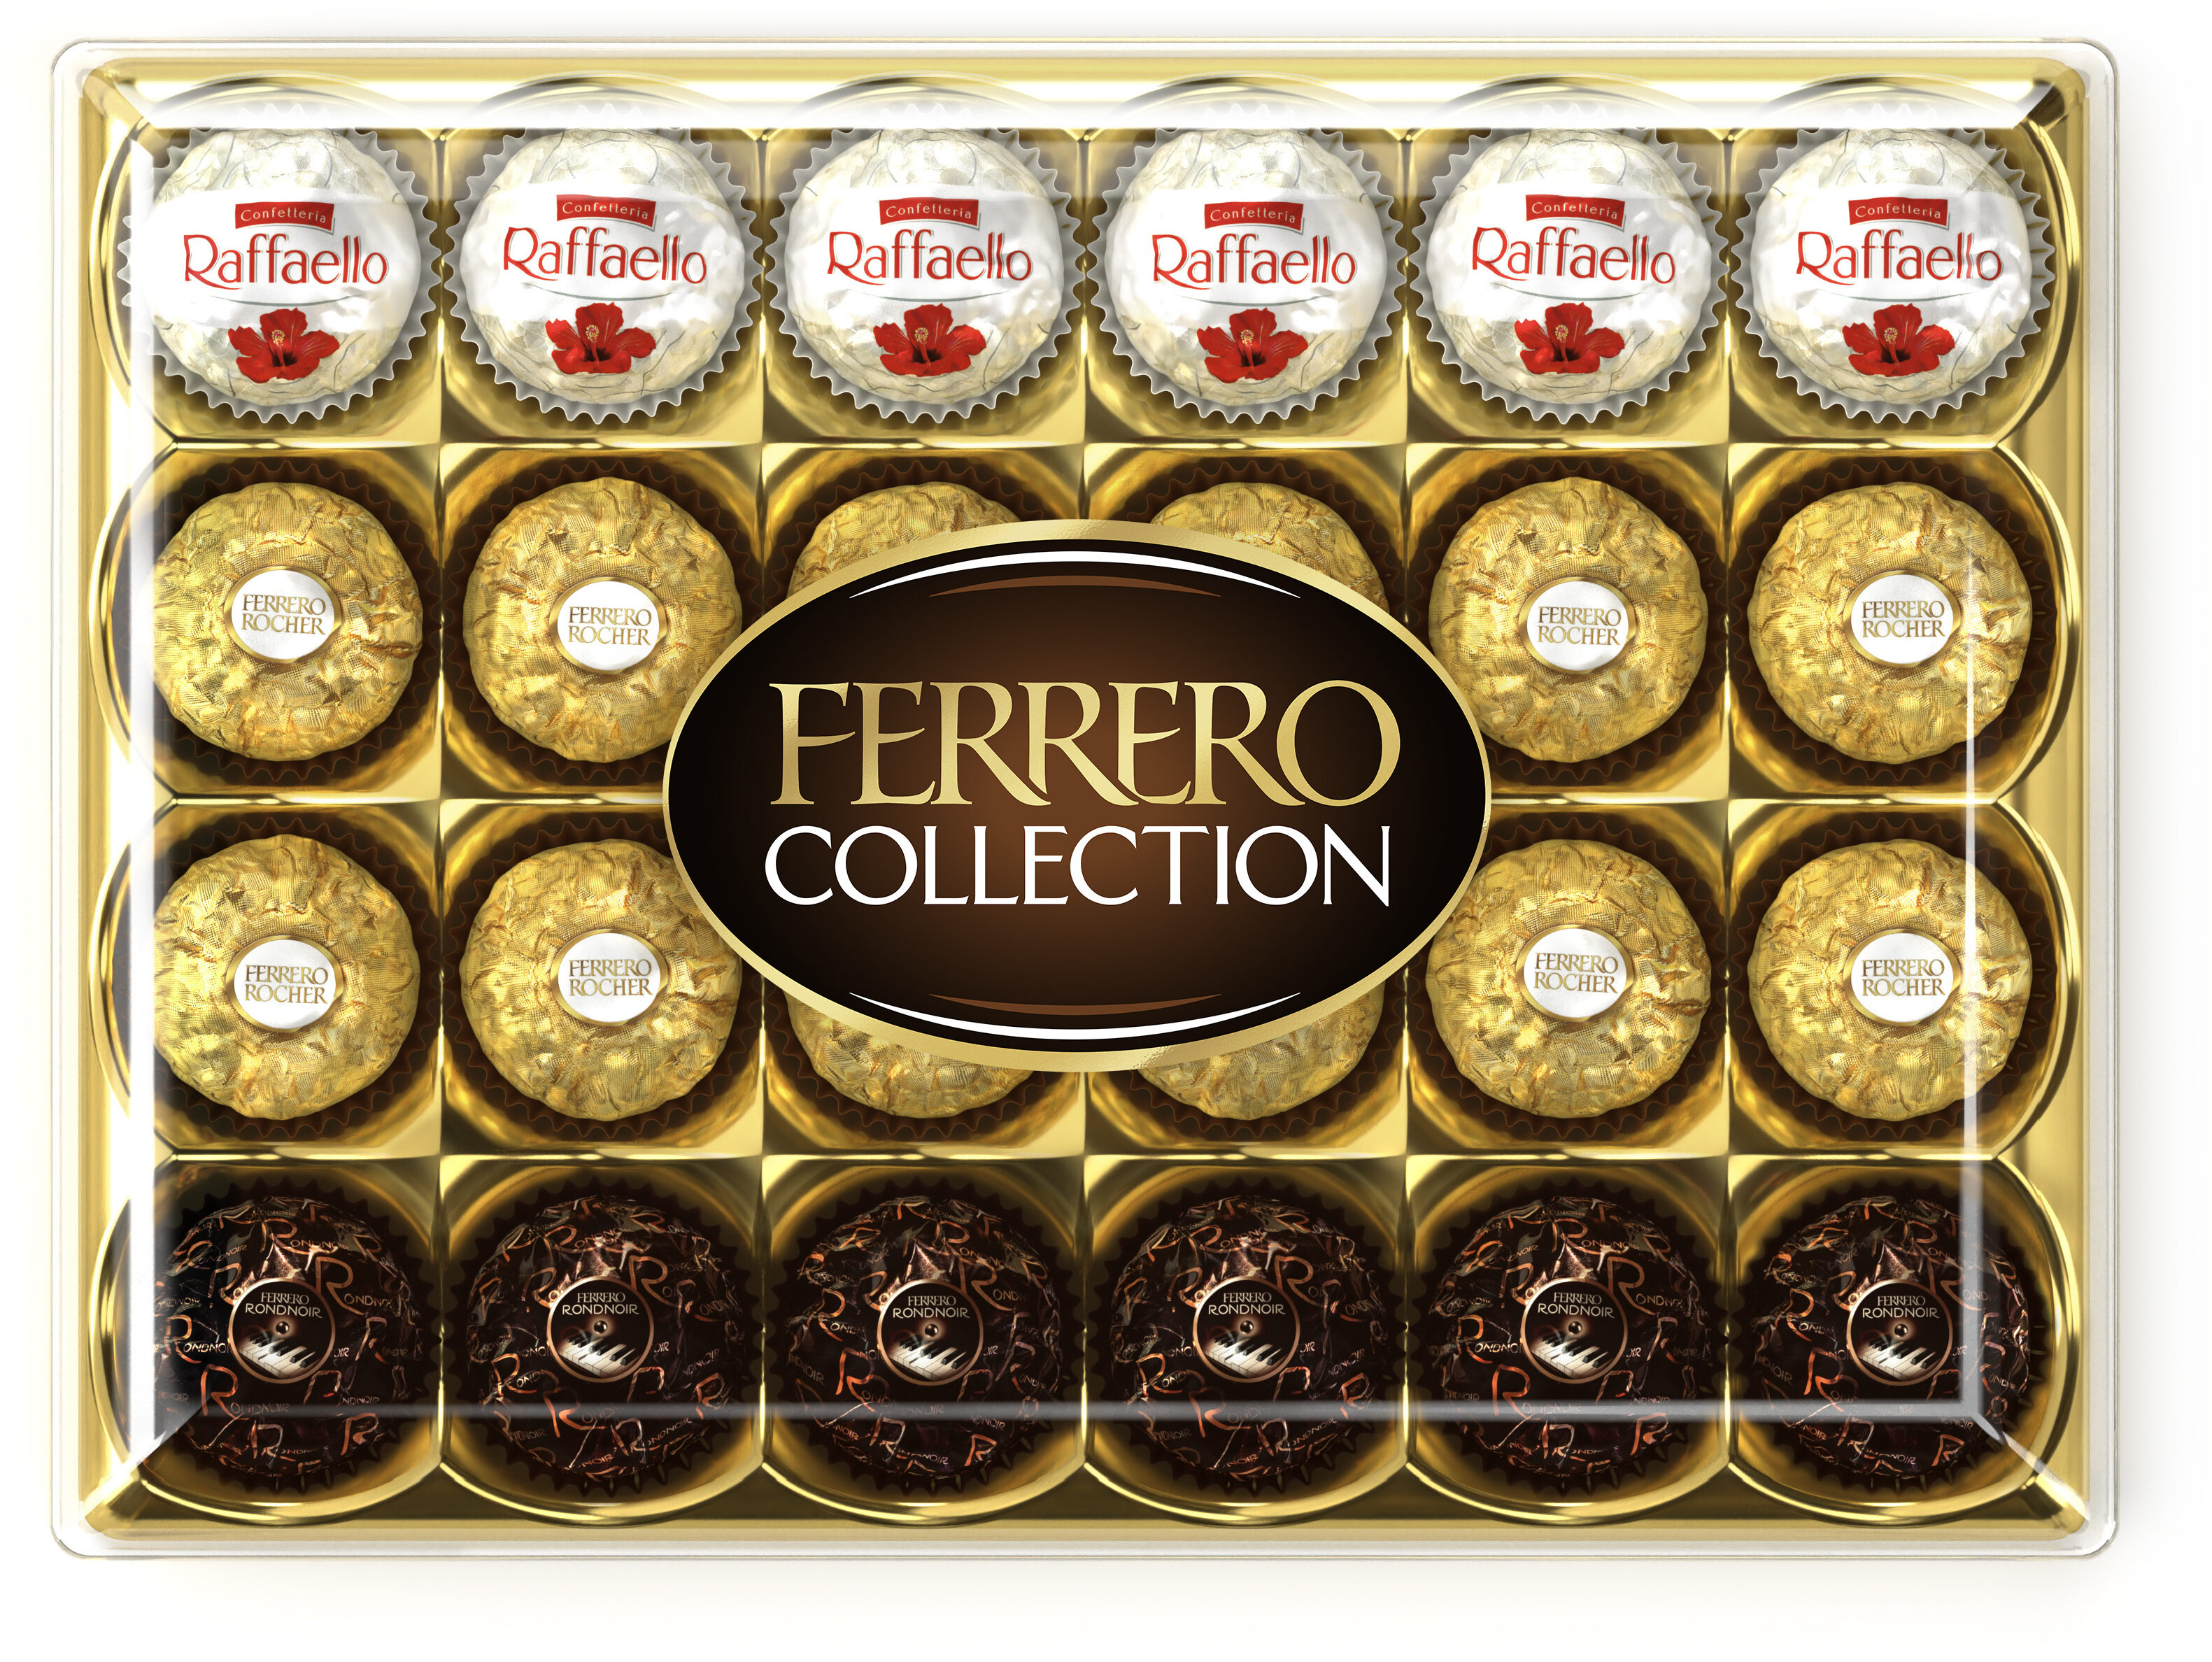 Ferrero Collection assortiment de chocolats x24 - Produit - fr